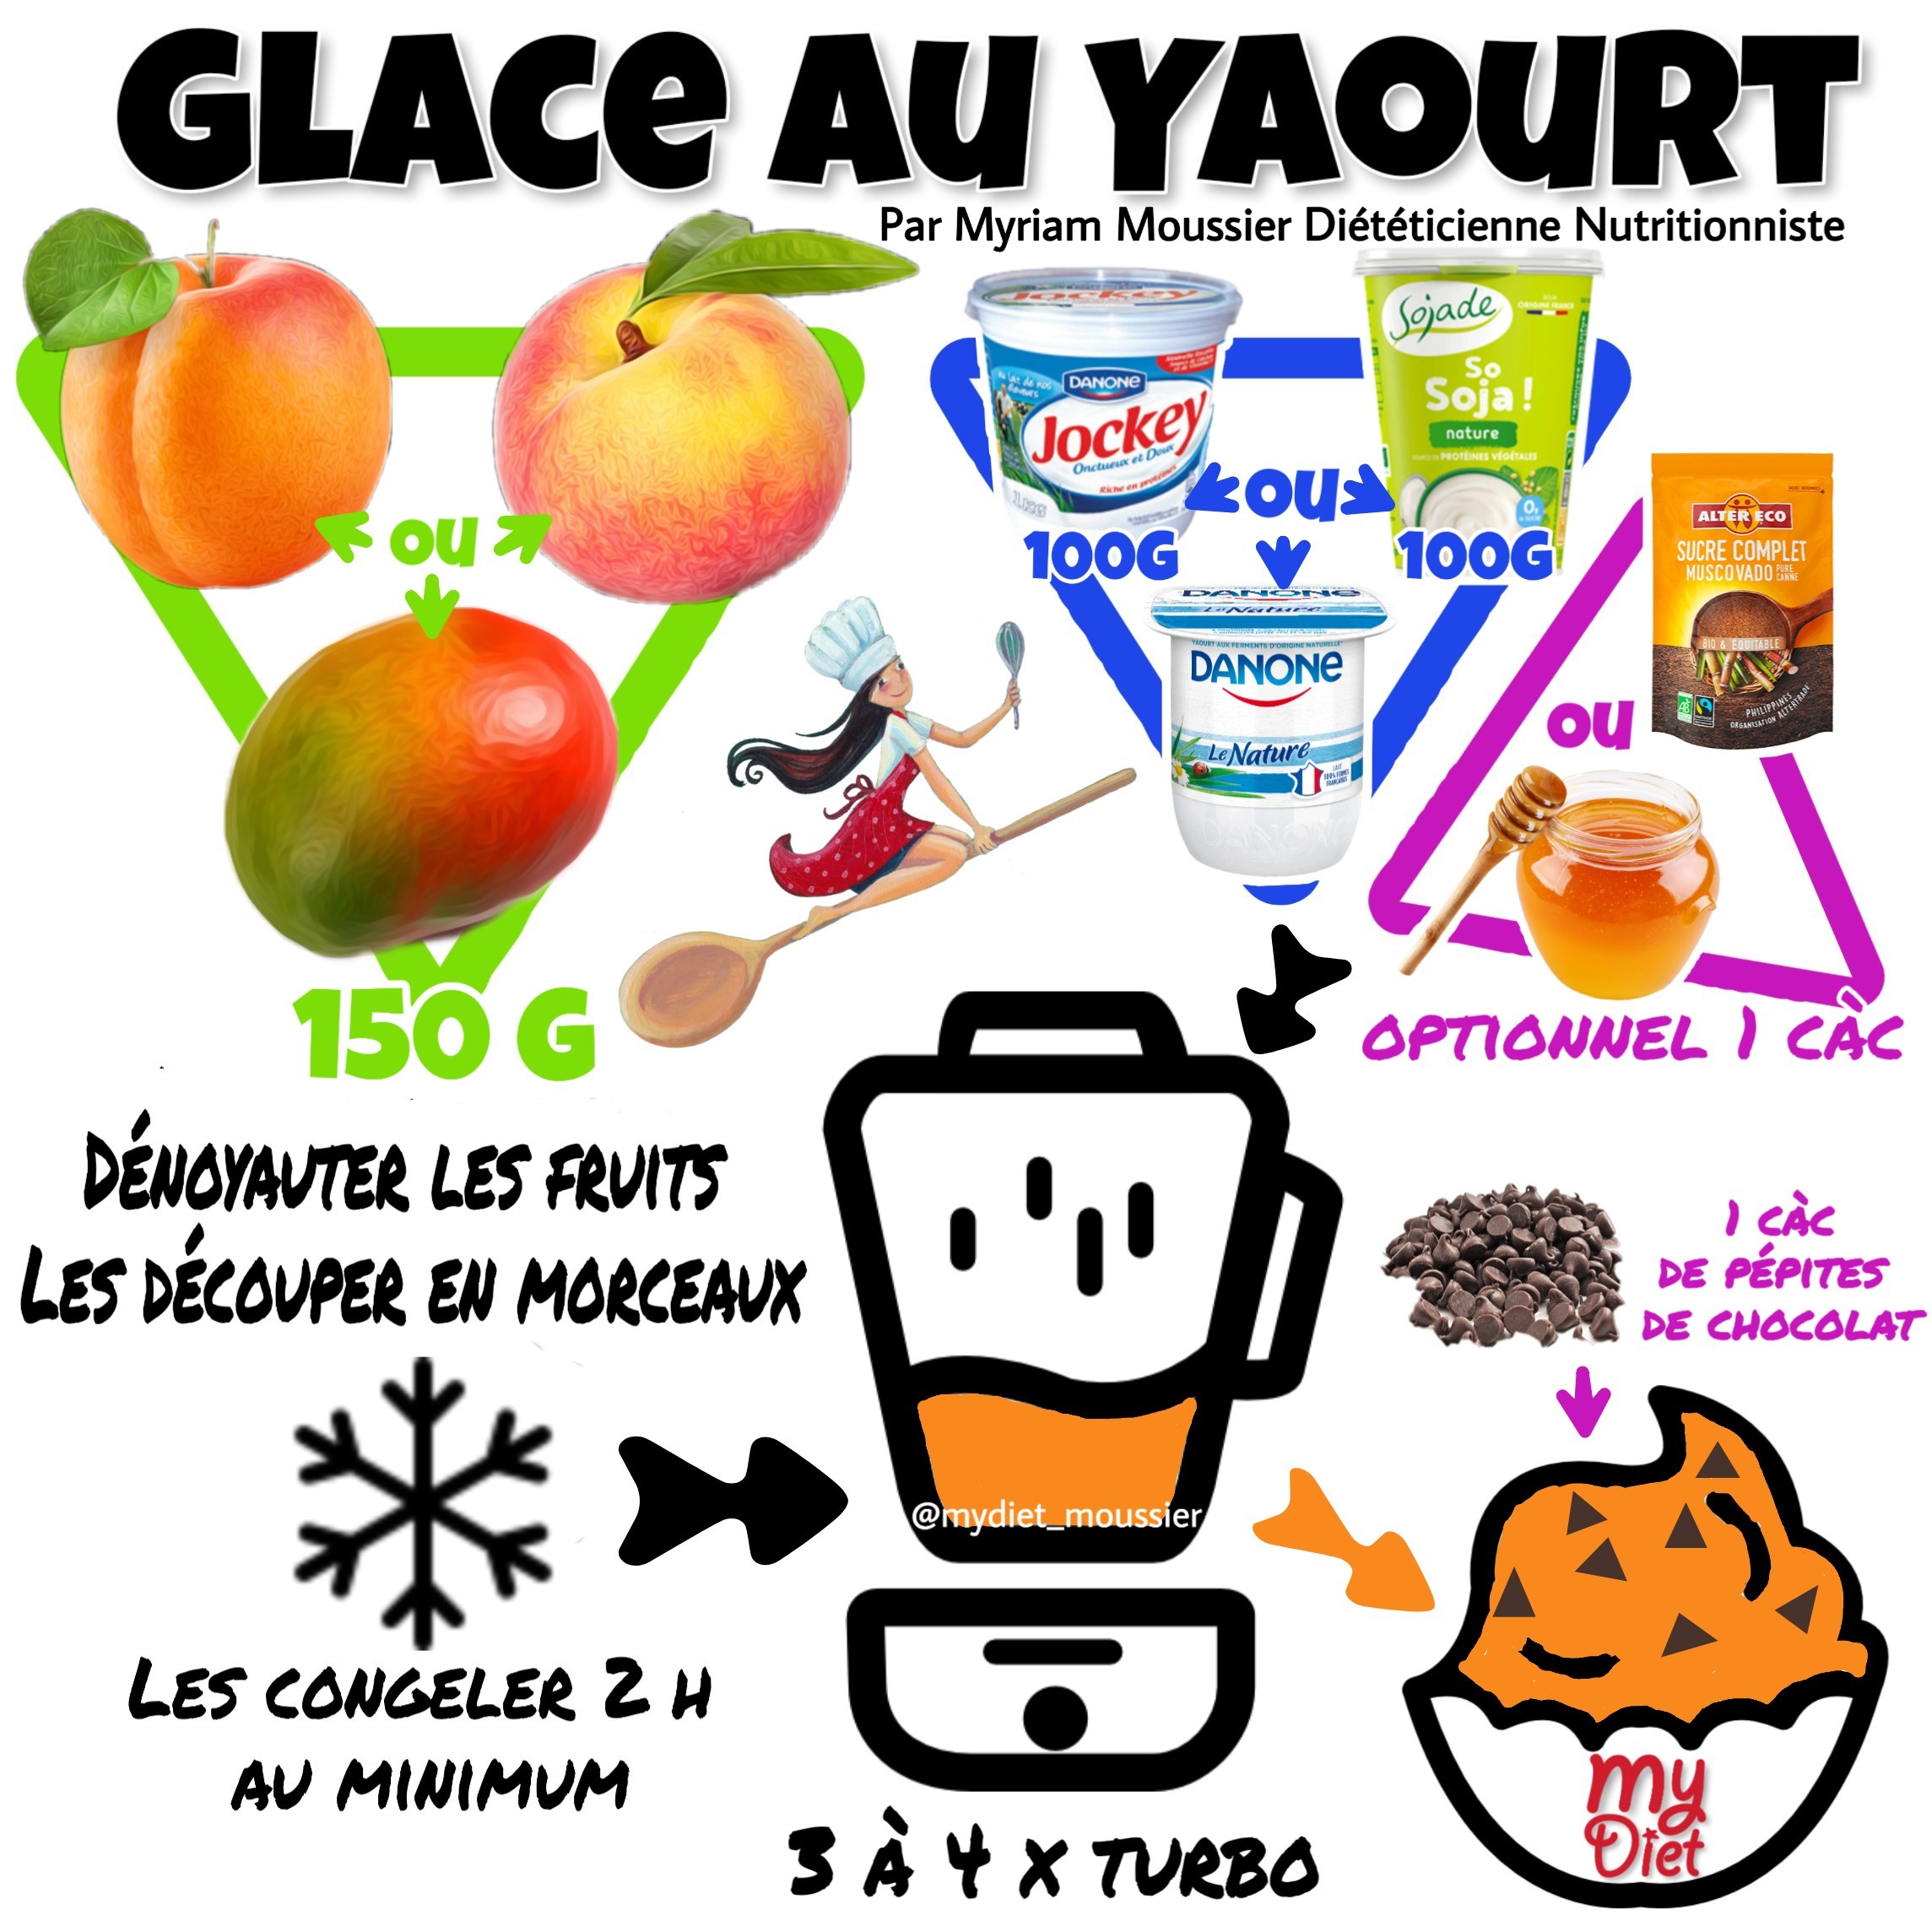 Glace au yaourt